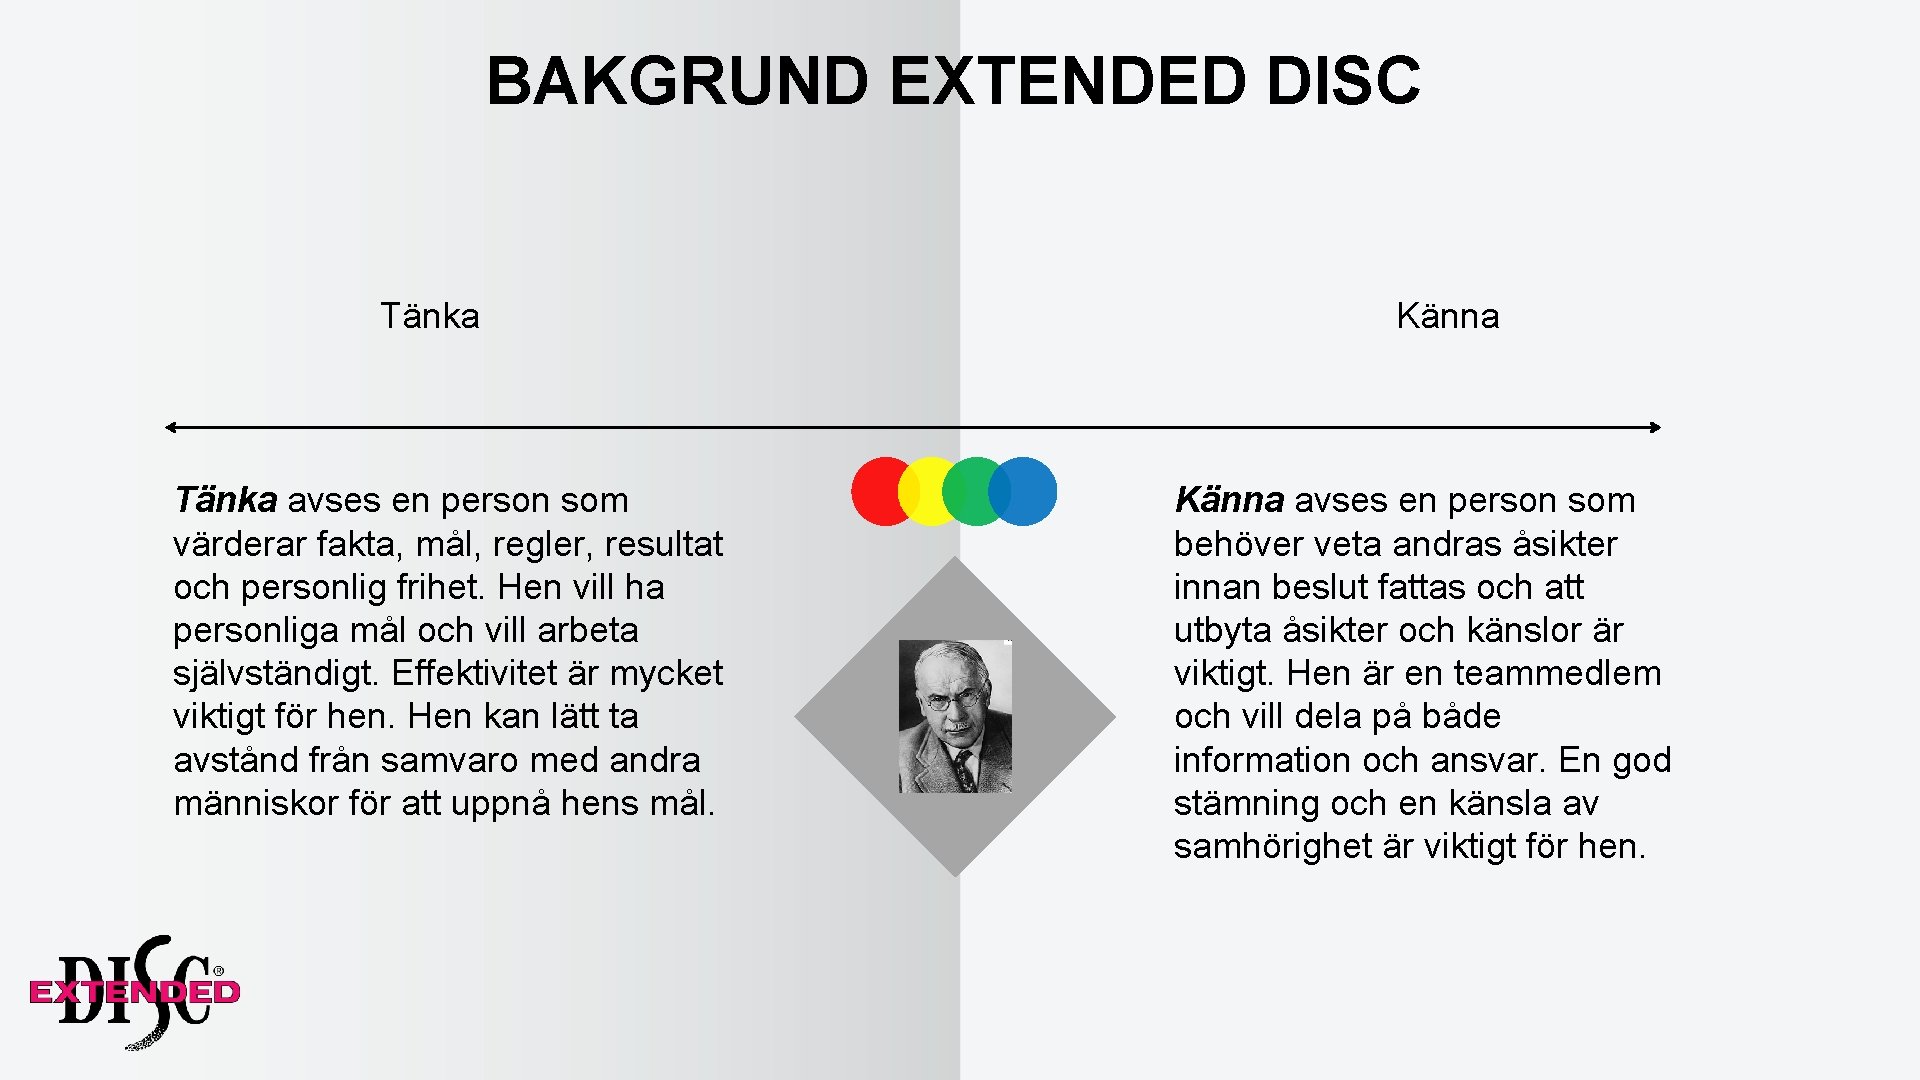 BAKGRUND EXTENDED DISC Tänka avses en person som värderar fakta, mål, regler, resultat och